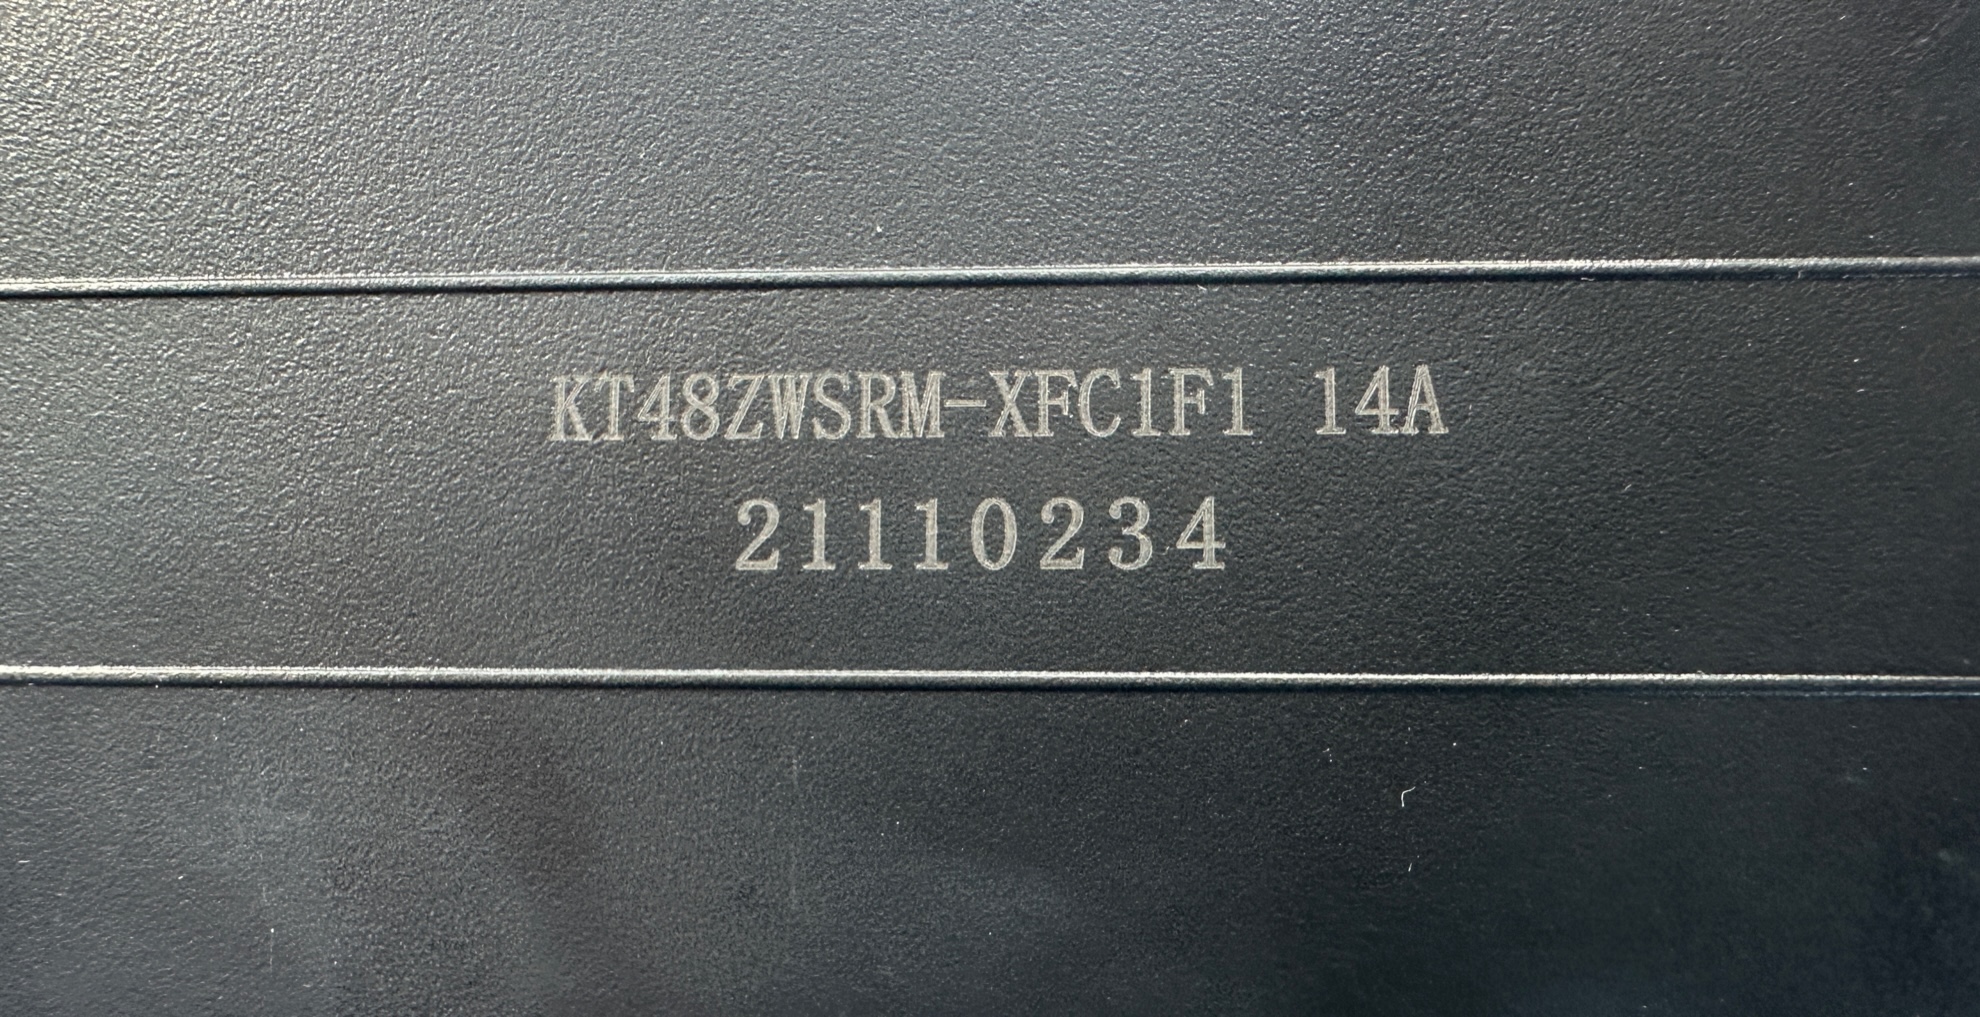 Contrôleur de régulateur UD intégré dans le rail de batterie 48V 14A